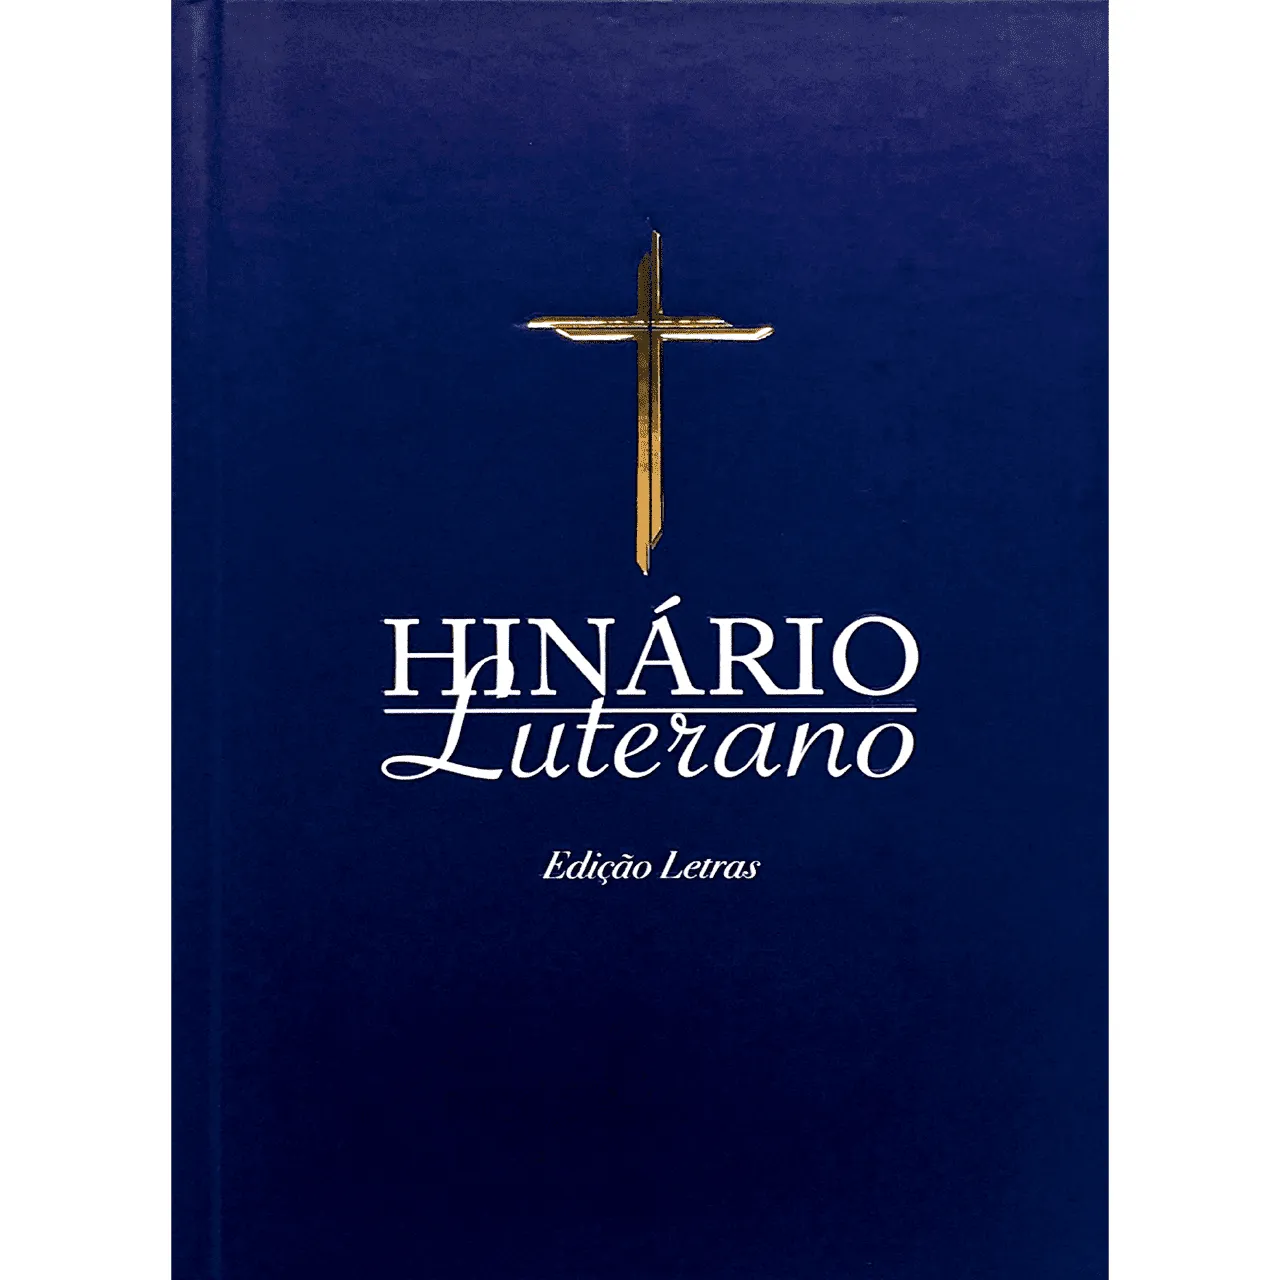 Hinário Luterano - Edição Letras 